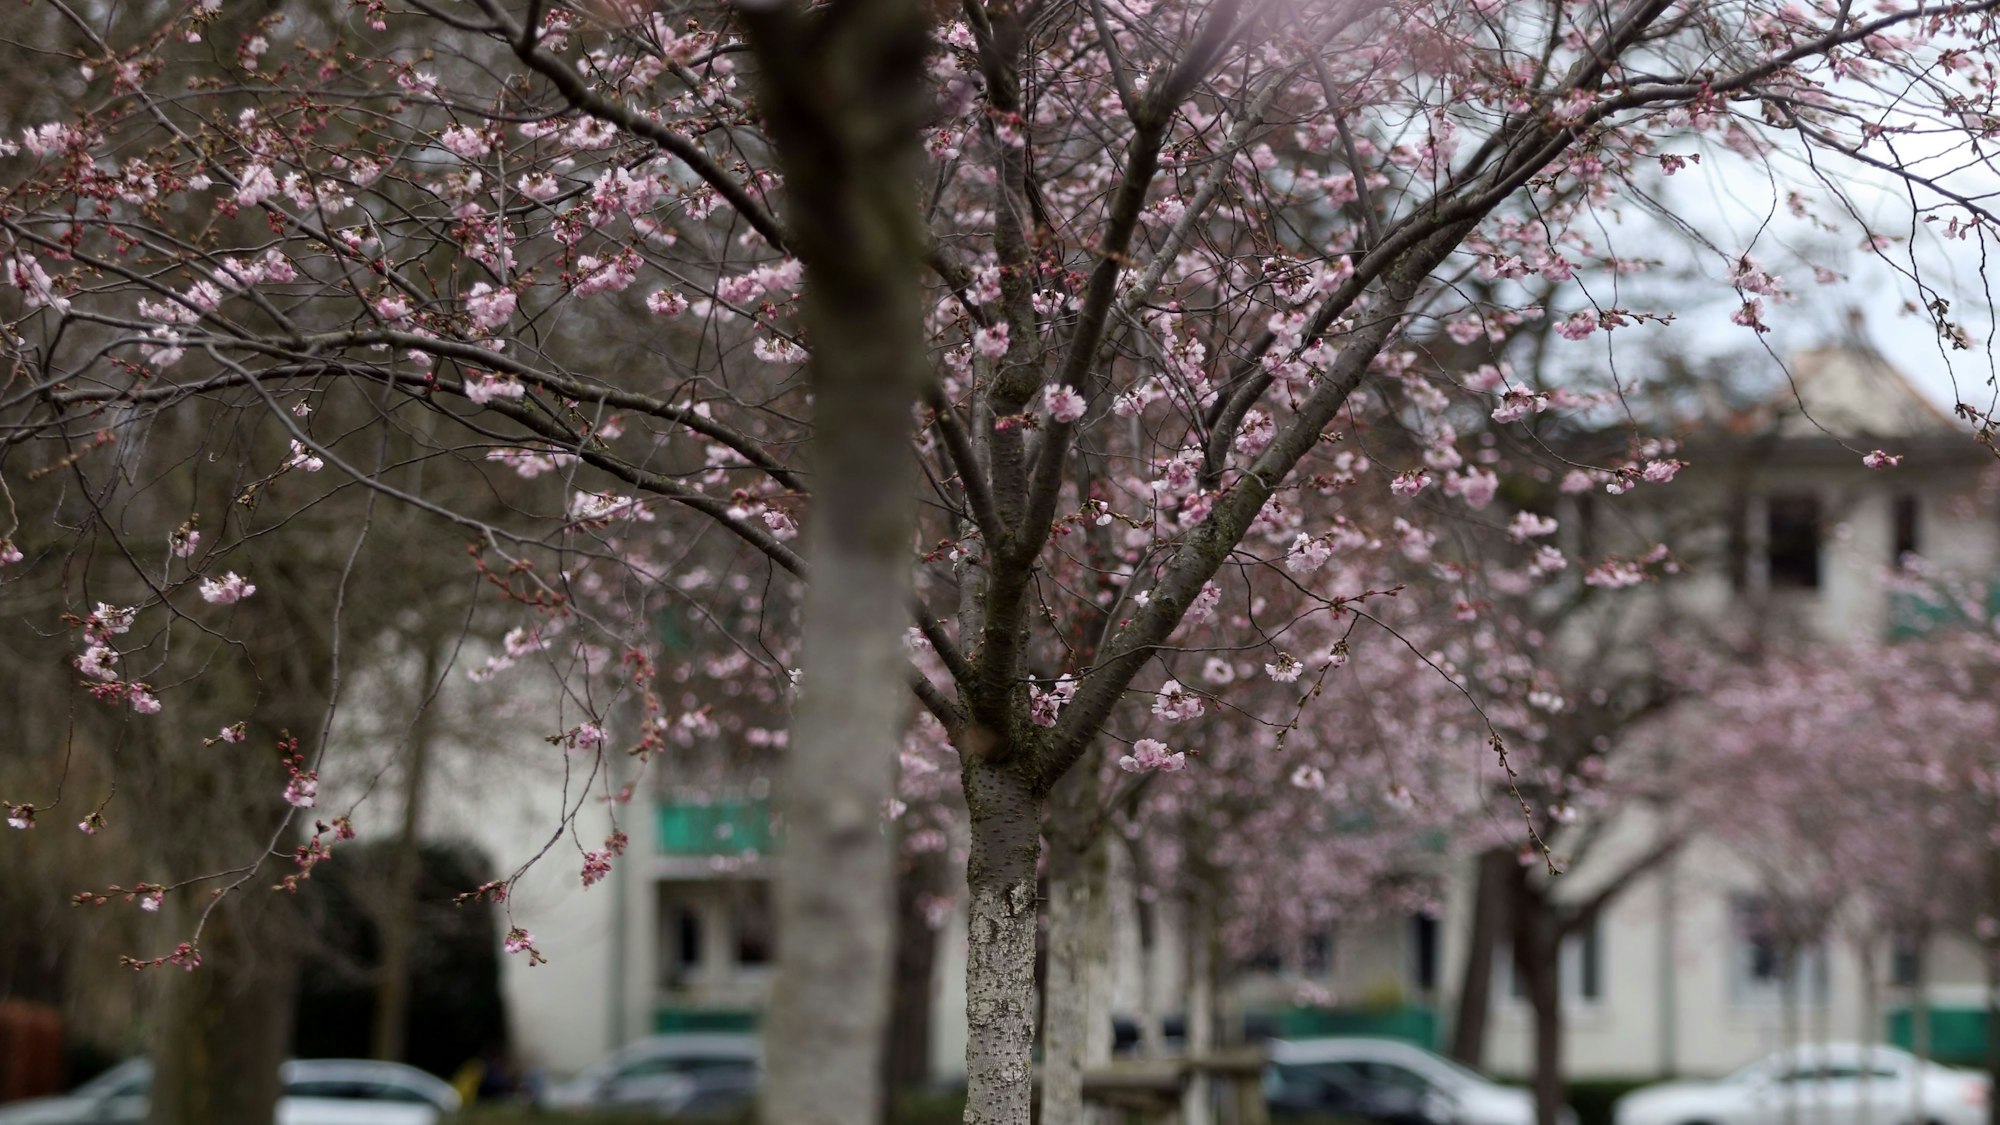 Langsam kommt der Frühling raus. Bäume Stäucher und Blumen blühen bereits. Wie hier in Nippes in der Grabbestraße wo eine kleine Allee von Kirschbäumen blühen. Foto: Arton Krasniqi

